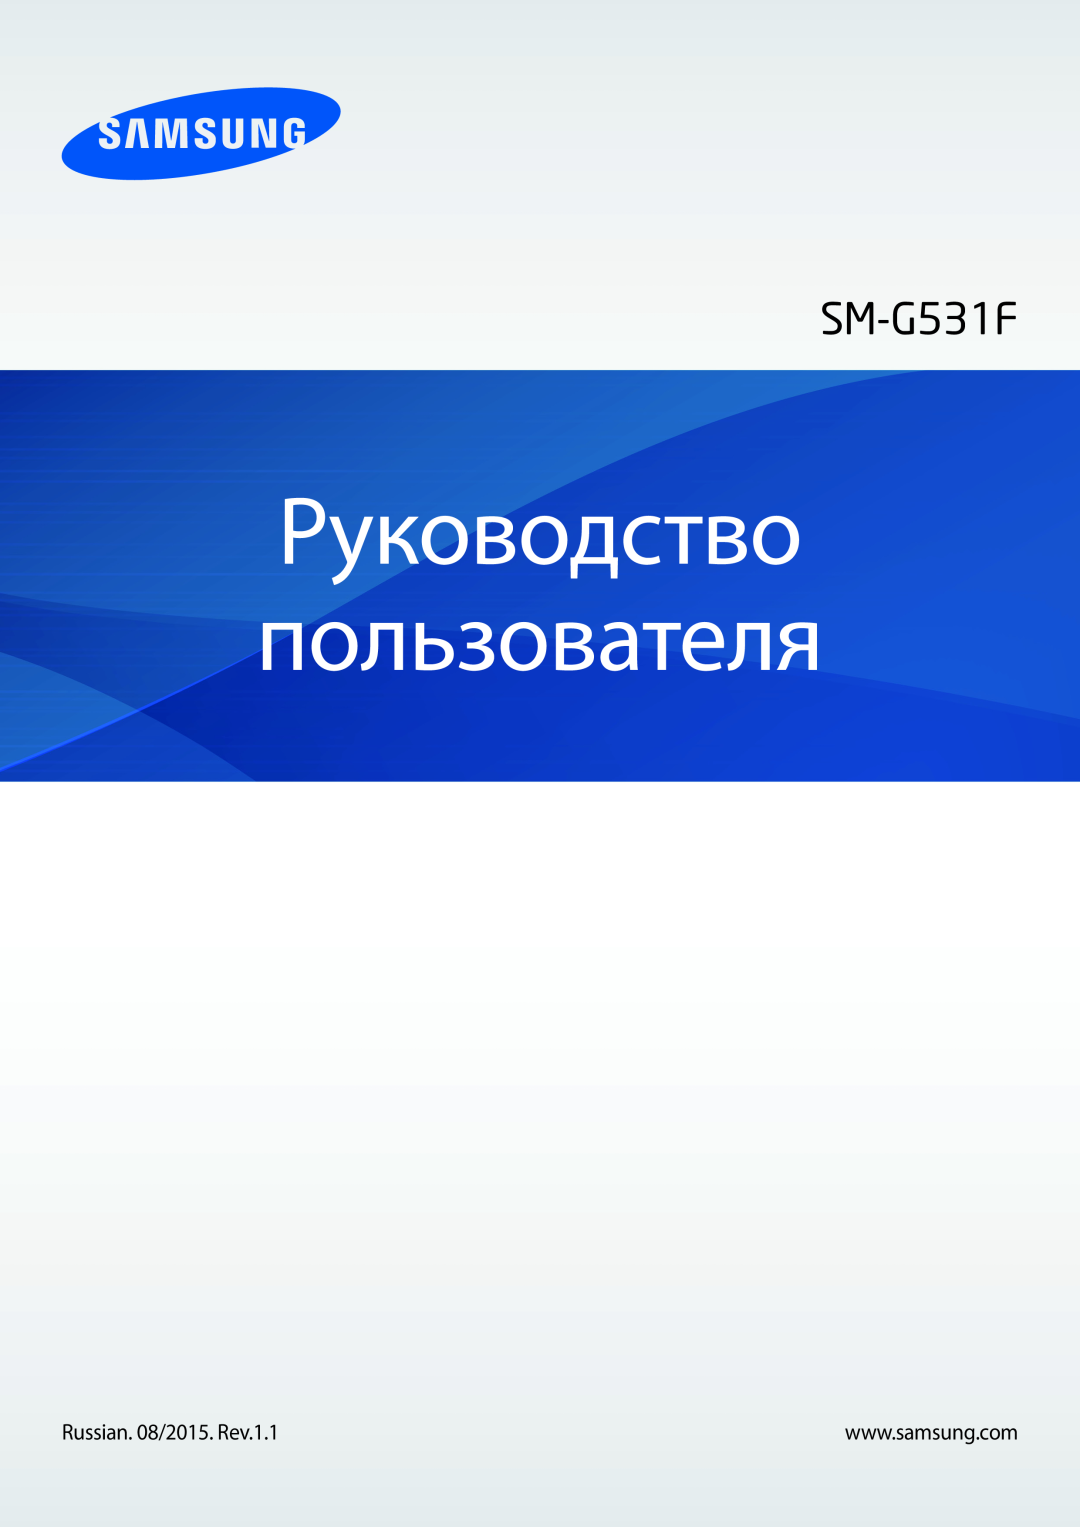 Samsung SM-G531FZAASEB, SM-G531FZWASEB, SM-G531FZDASEB, SM-G531FZAASER, SM-G531FZWASER manual Руководство пользователя 